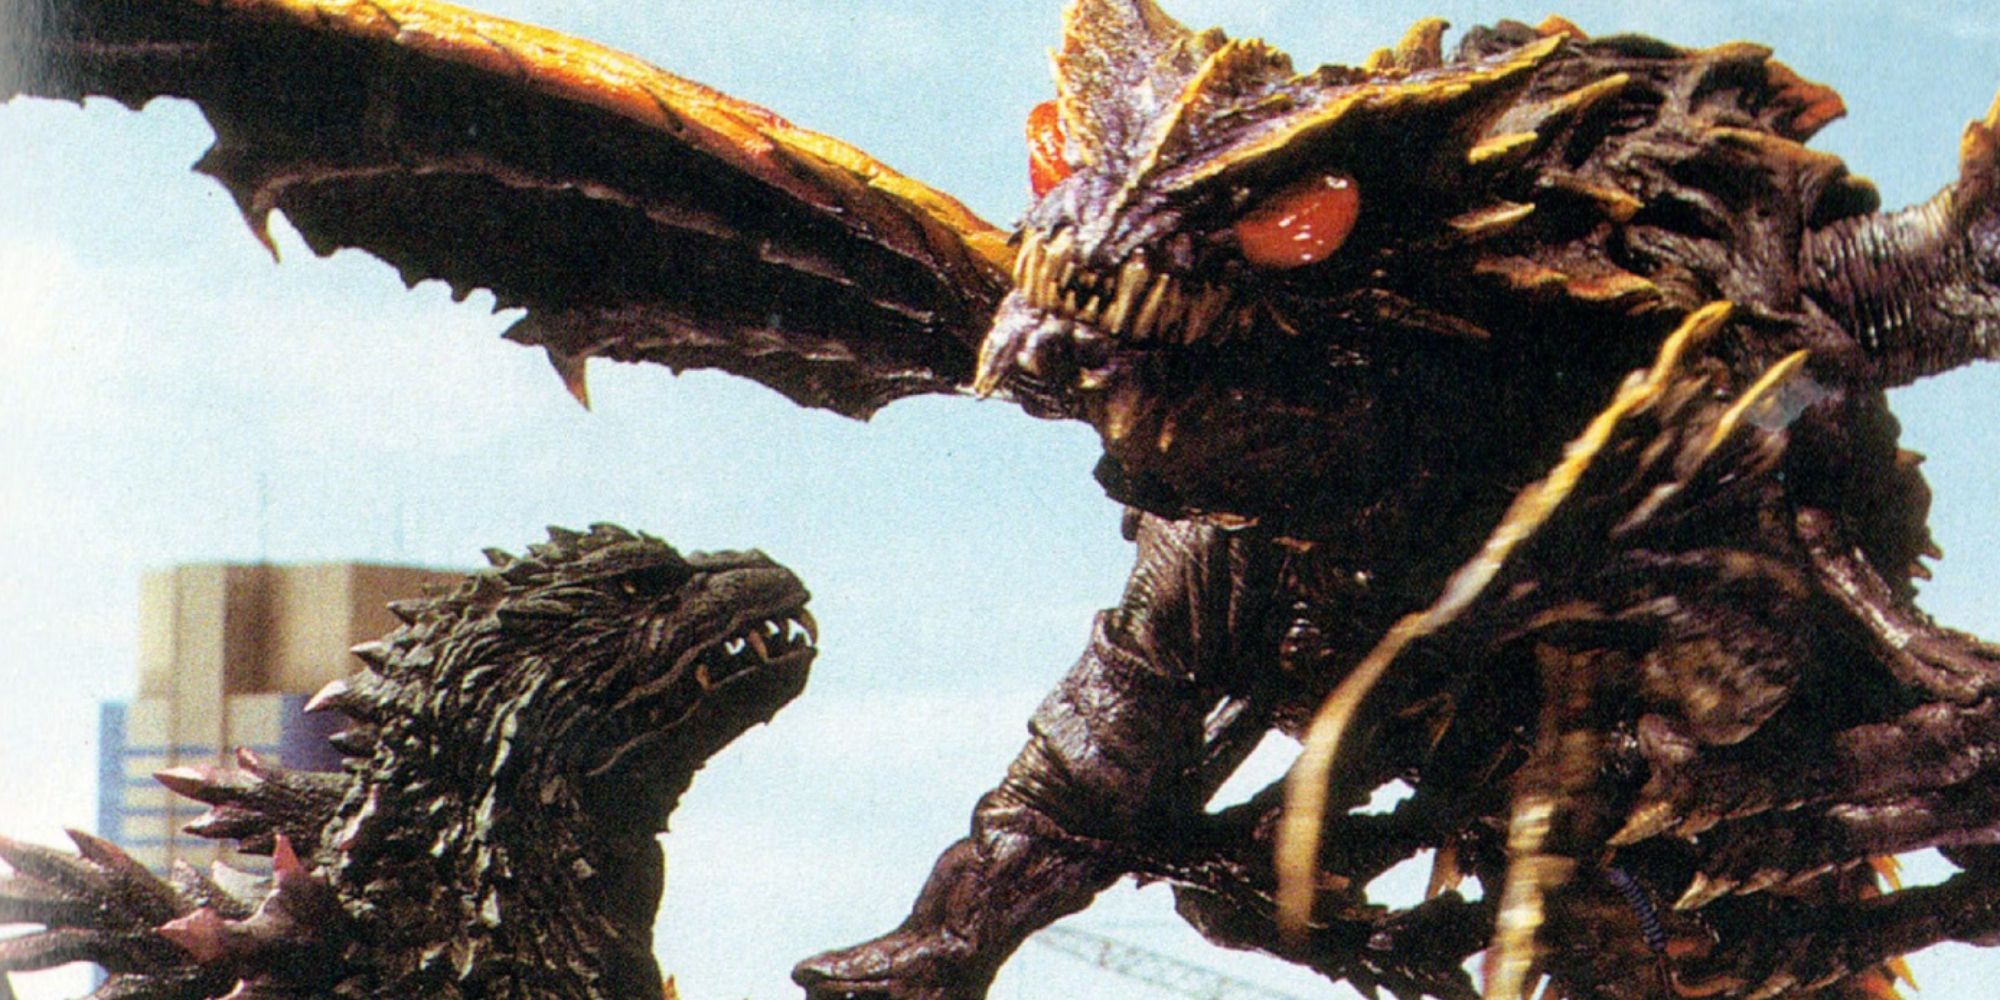 Godzilla vs. Megaguirus